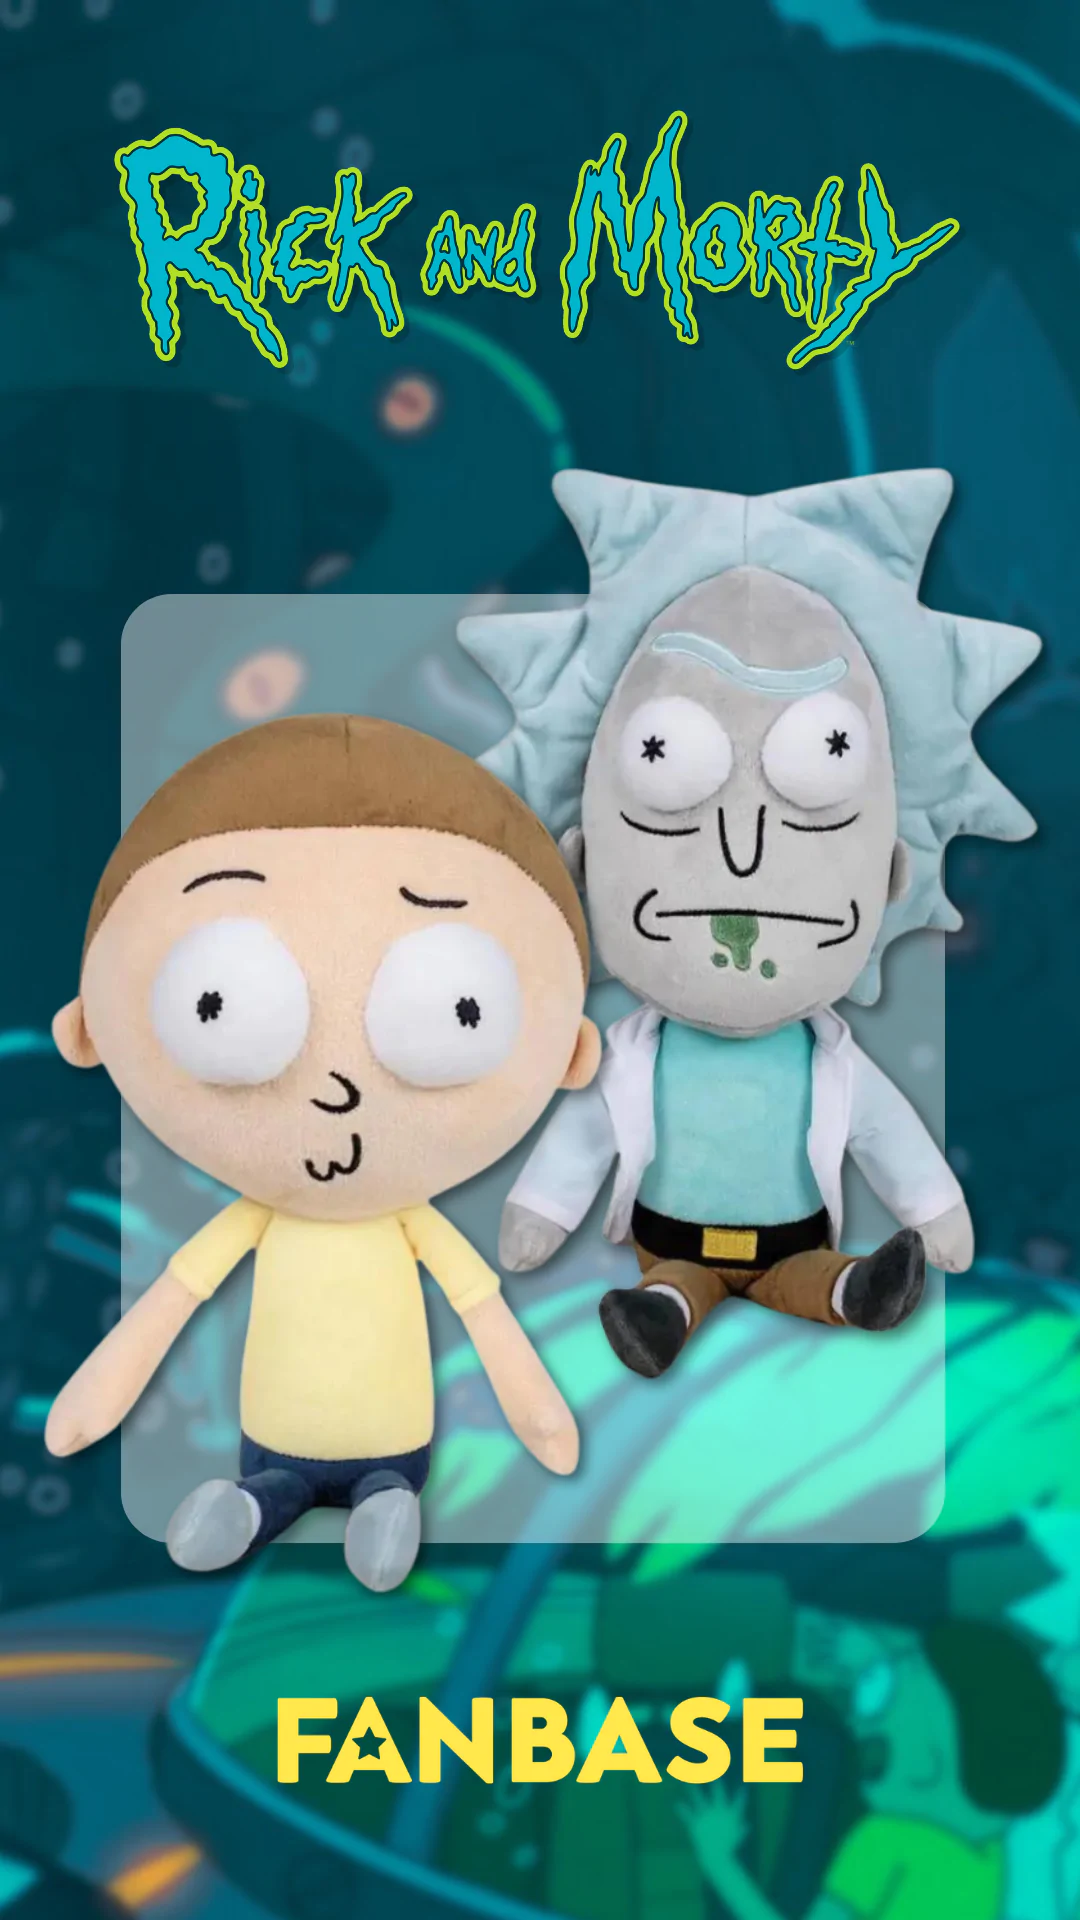 Rick and Morty plüssök érkeztek